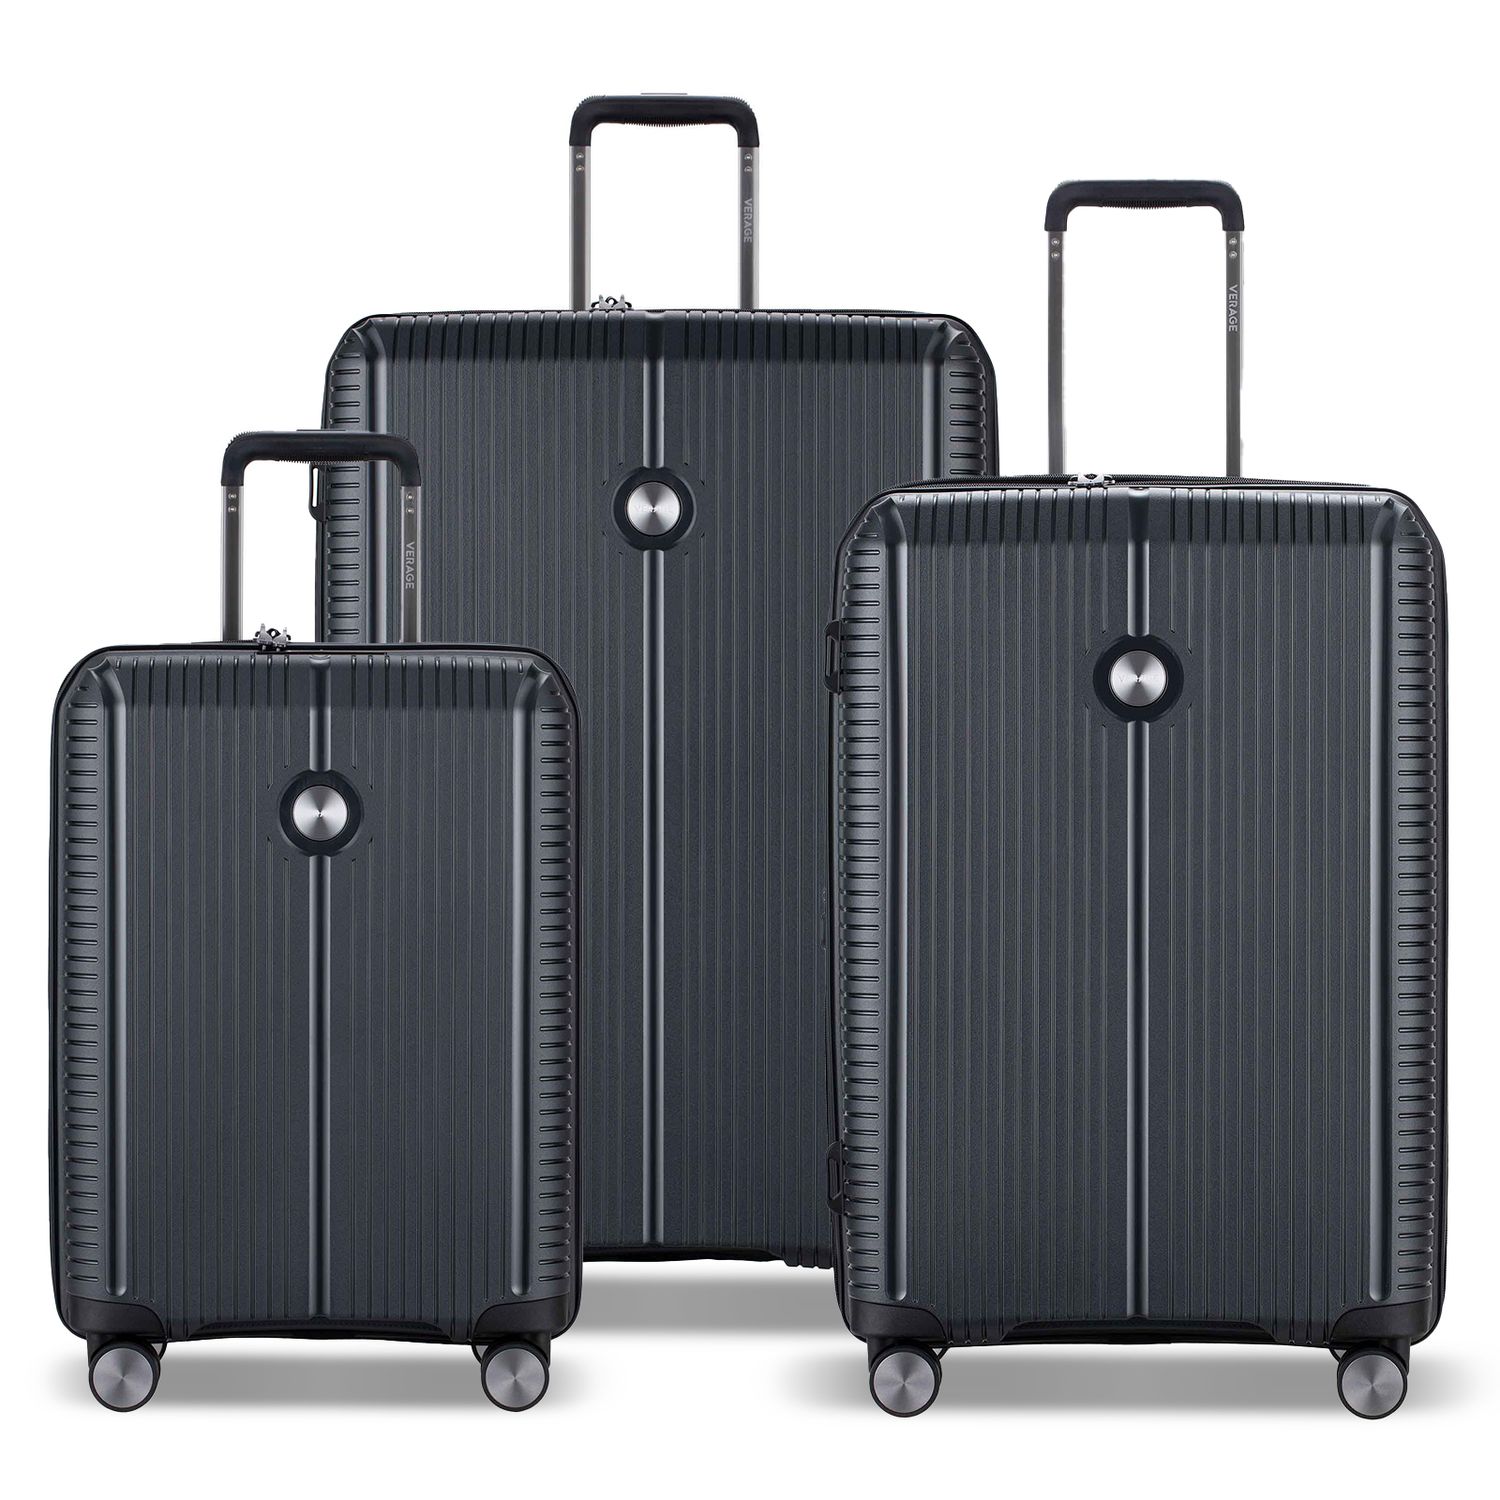 Designer suitcase set